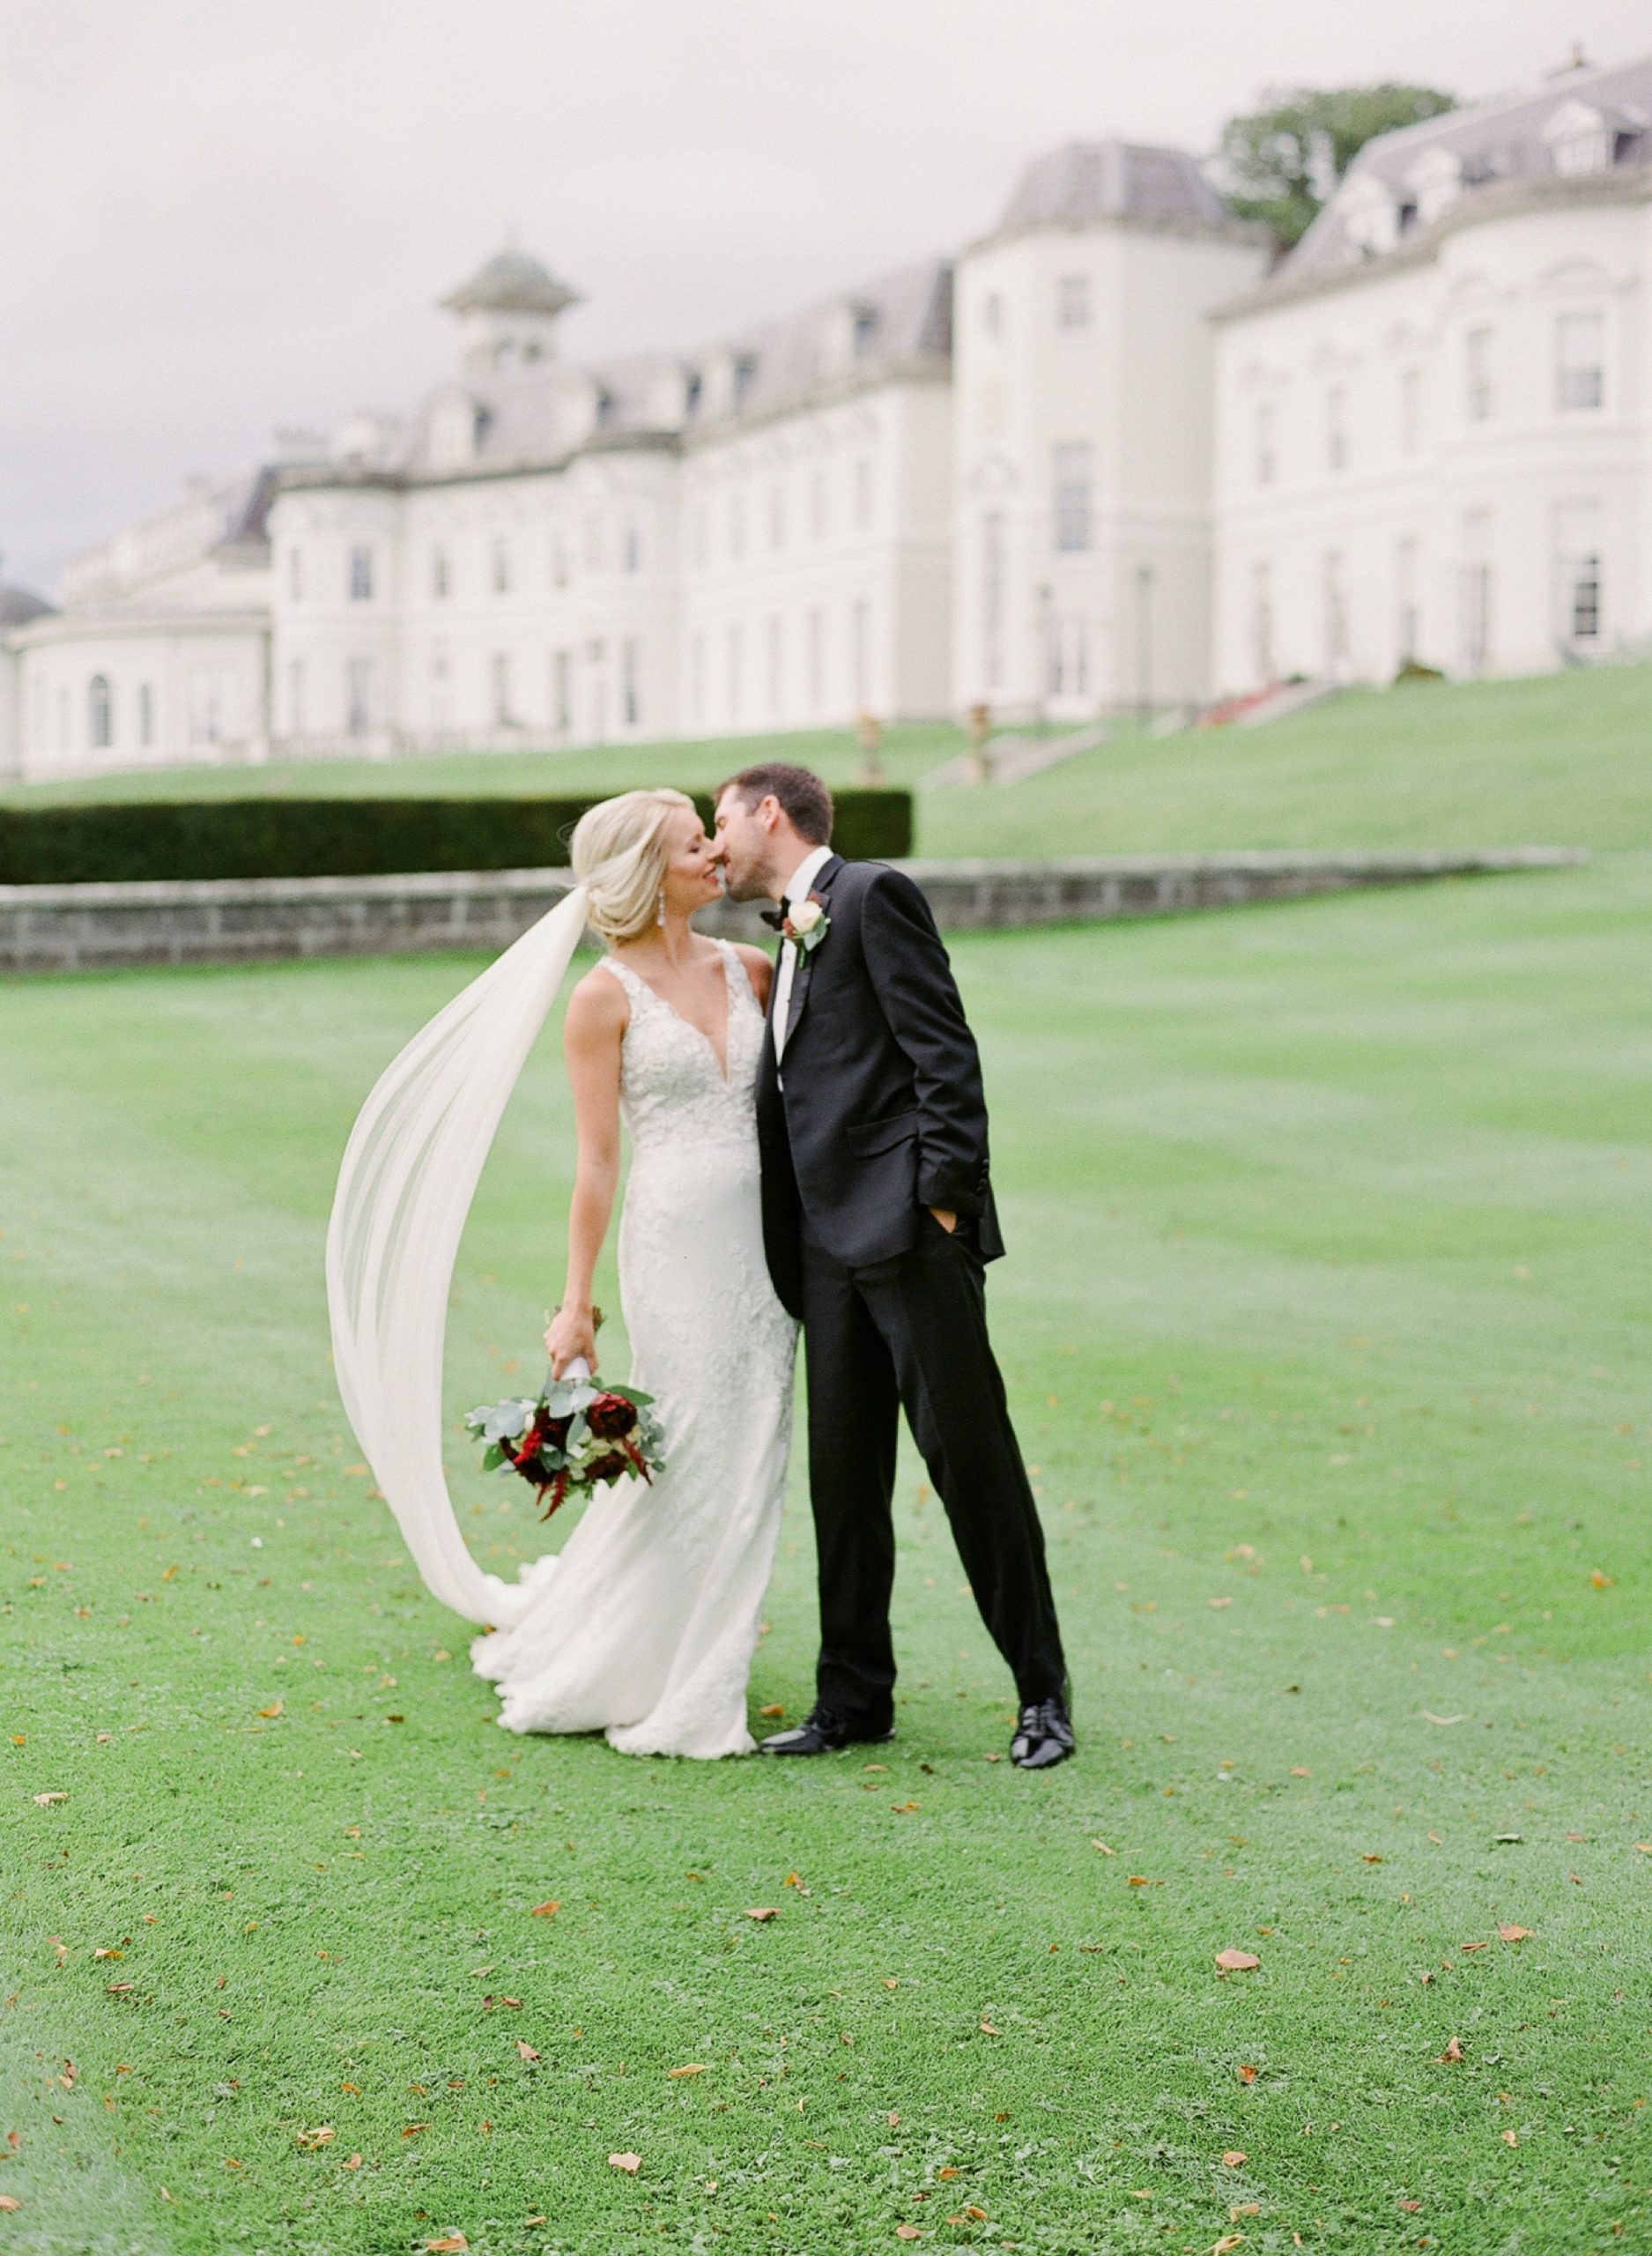 Jessie-Barksdale-Photography_Ireland-destination-wedding-at-The-K-Club-Resort__0041.jpg